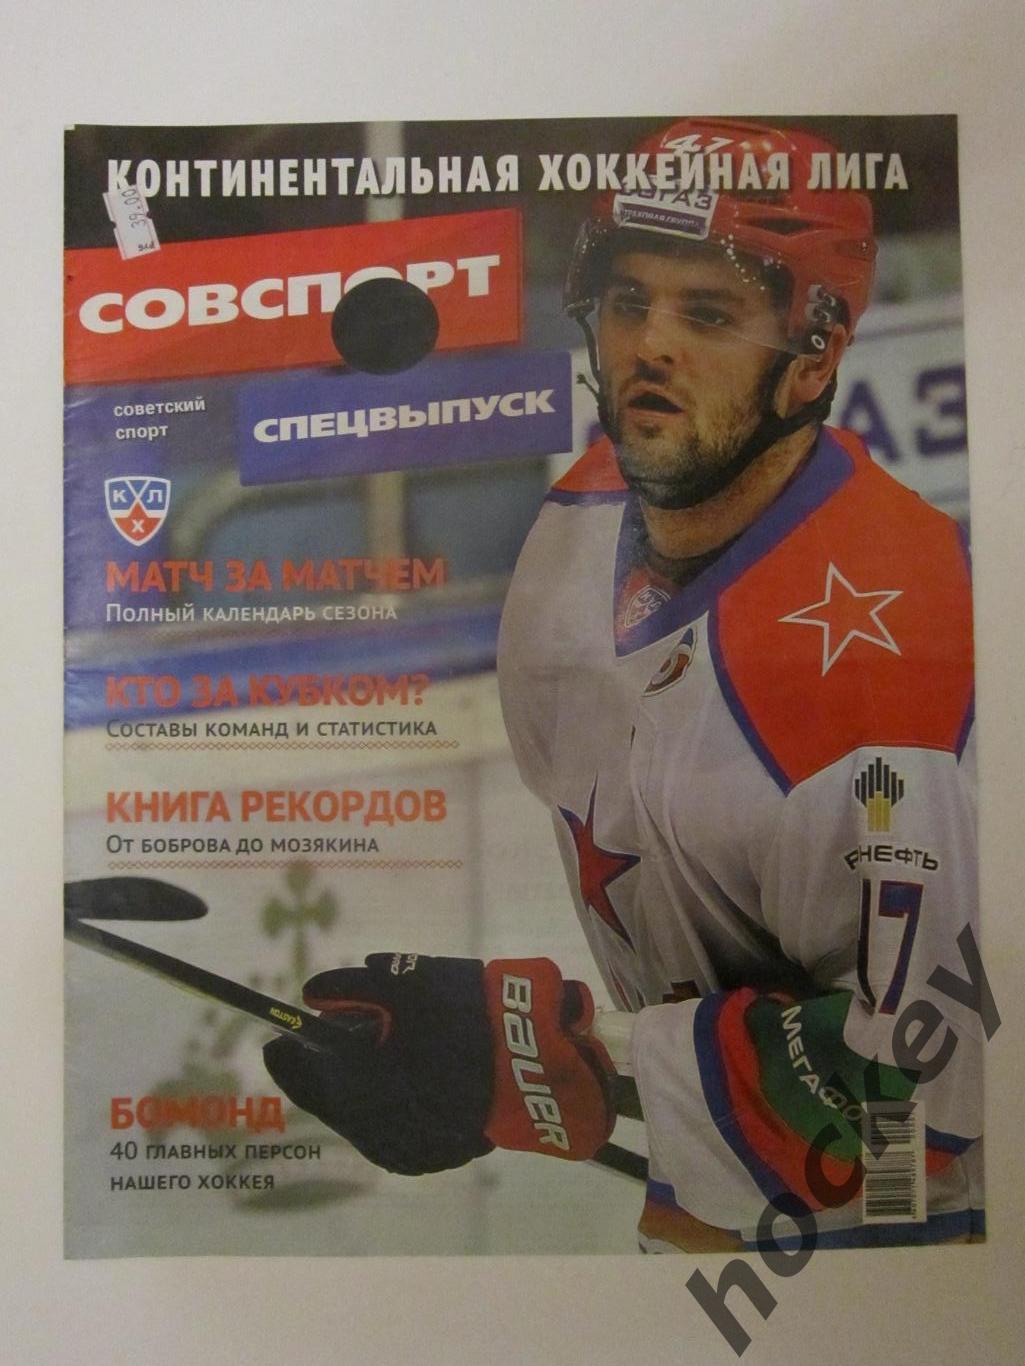 Советский спорт. Хоккей. КХЛ - 2014/15 гг. Спецвыпуск.